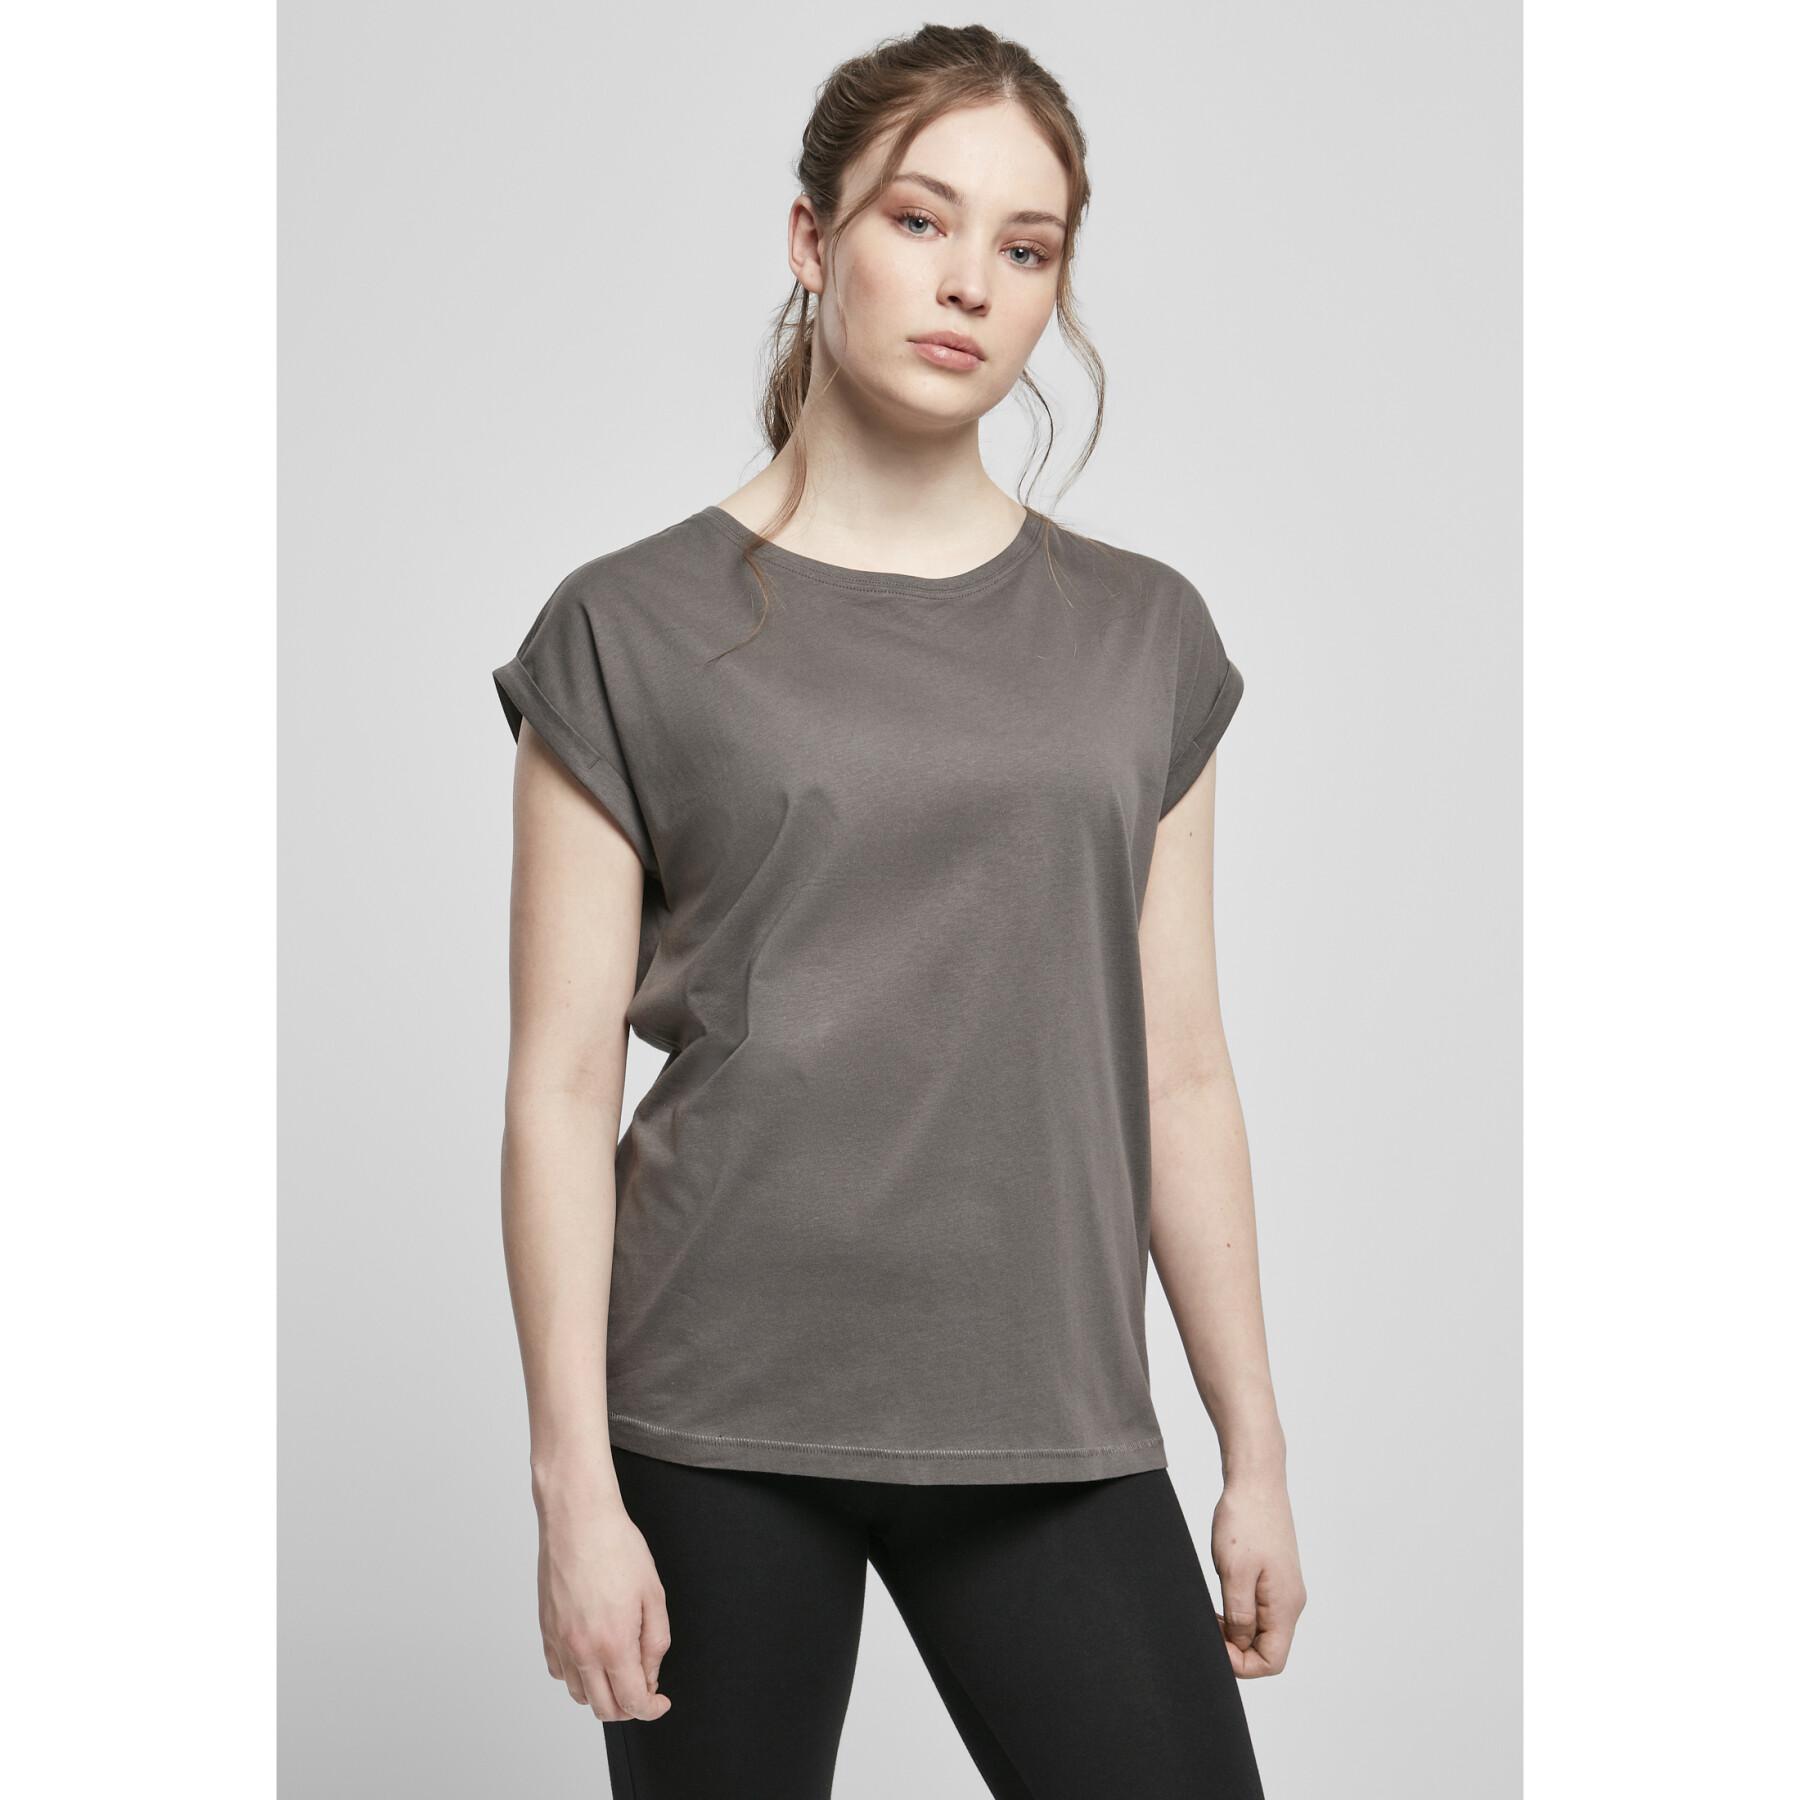 Damen-T-Shirt Urban Classics extended shoulder